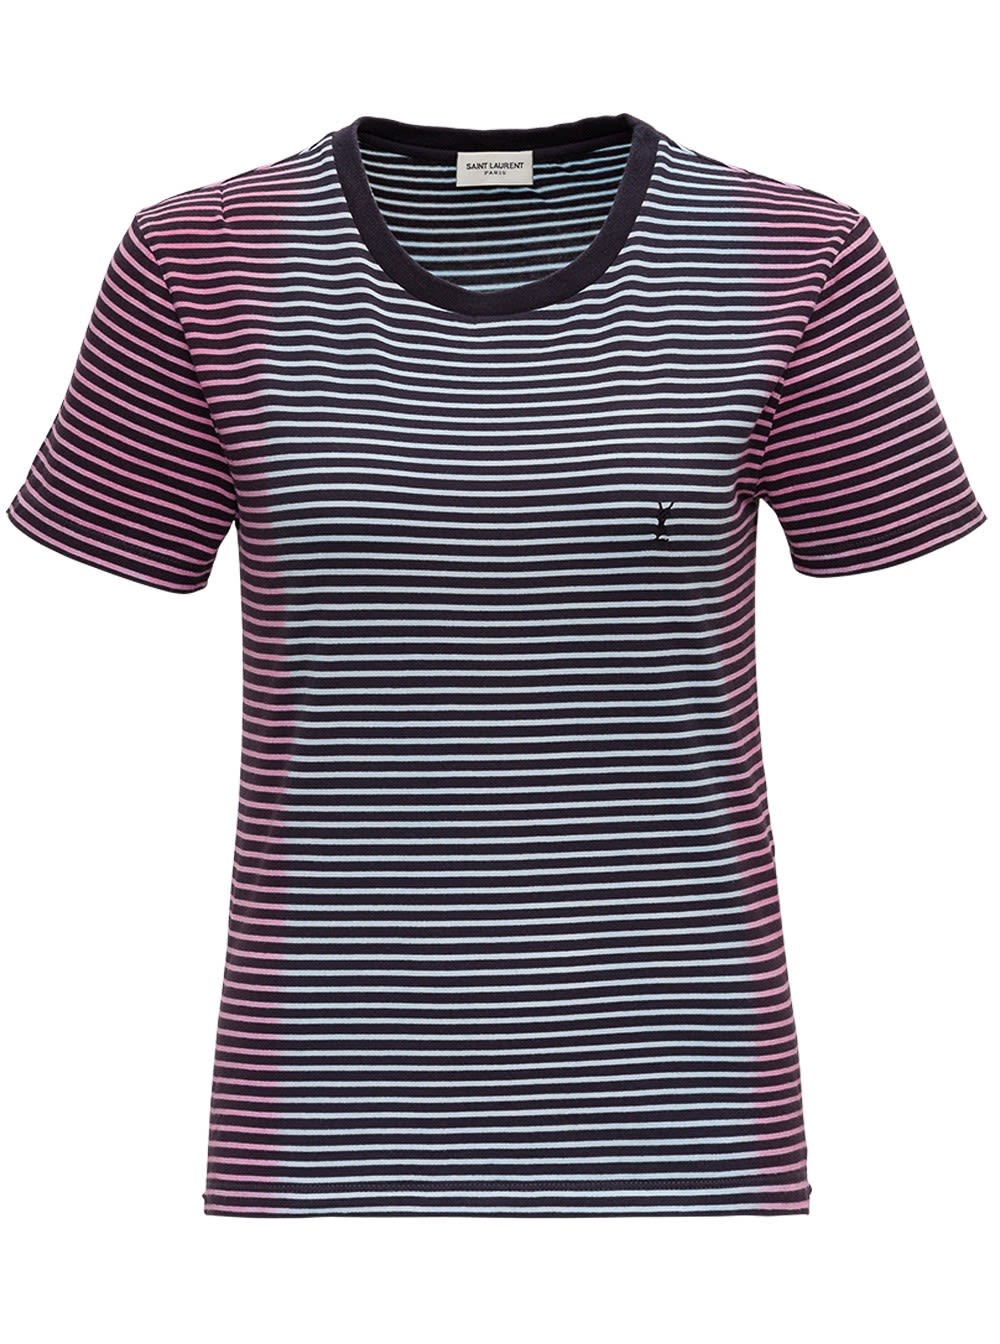 Saint Laurent Striped Monogram T-shirt In Jersey Tie-die